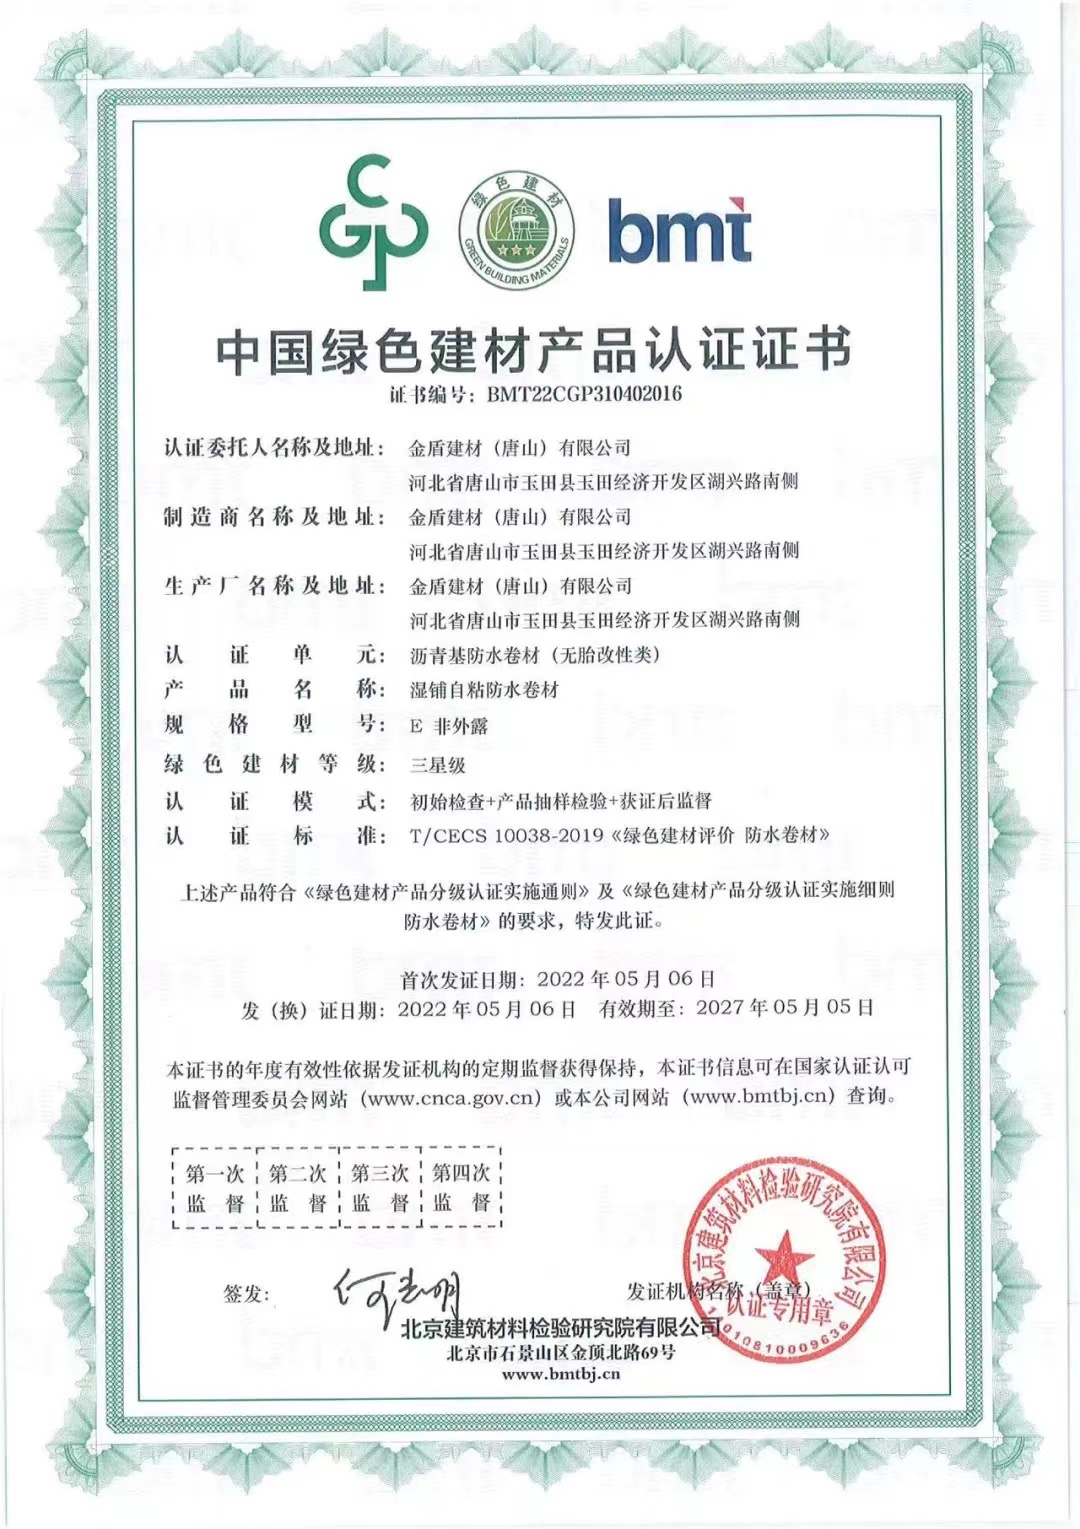 金盾防水榮獲“中國綠色建材產品”三星級認證證書